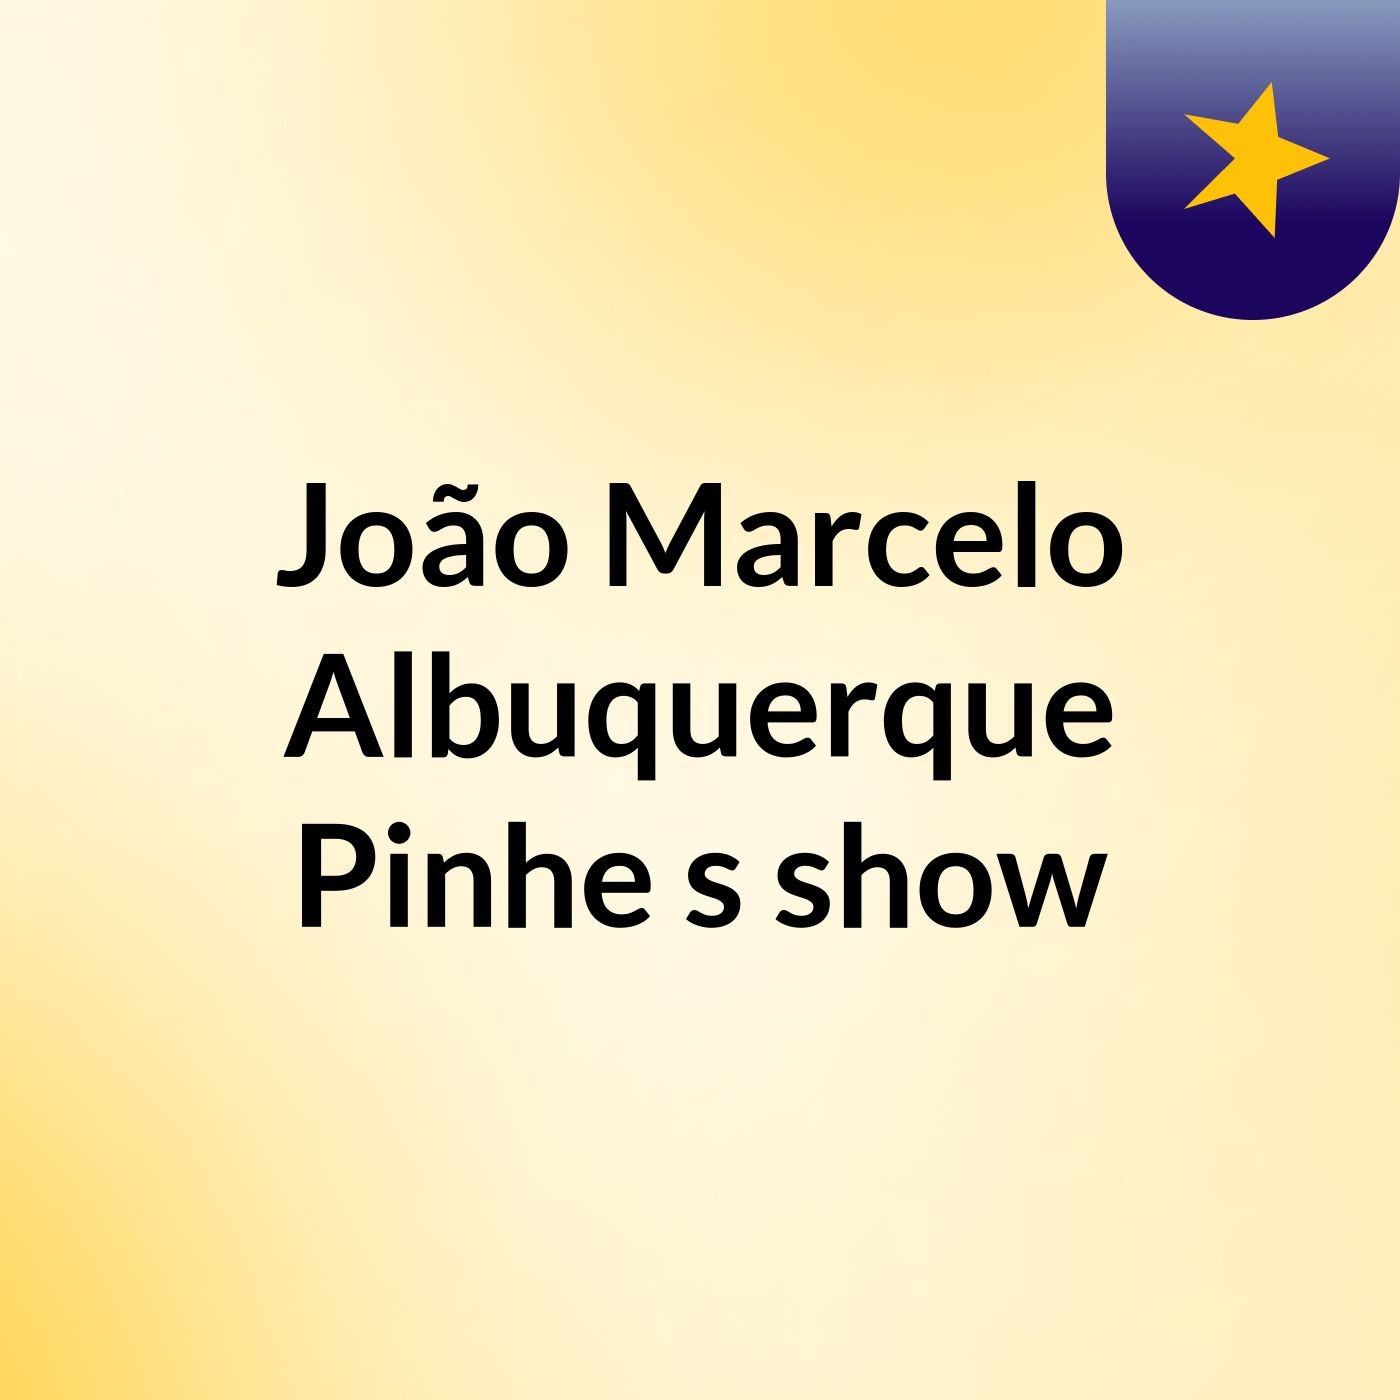 João Marcelo Albuquerque Pinhe's show